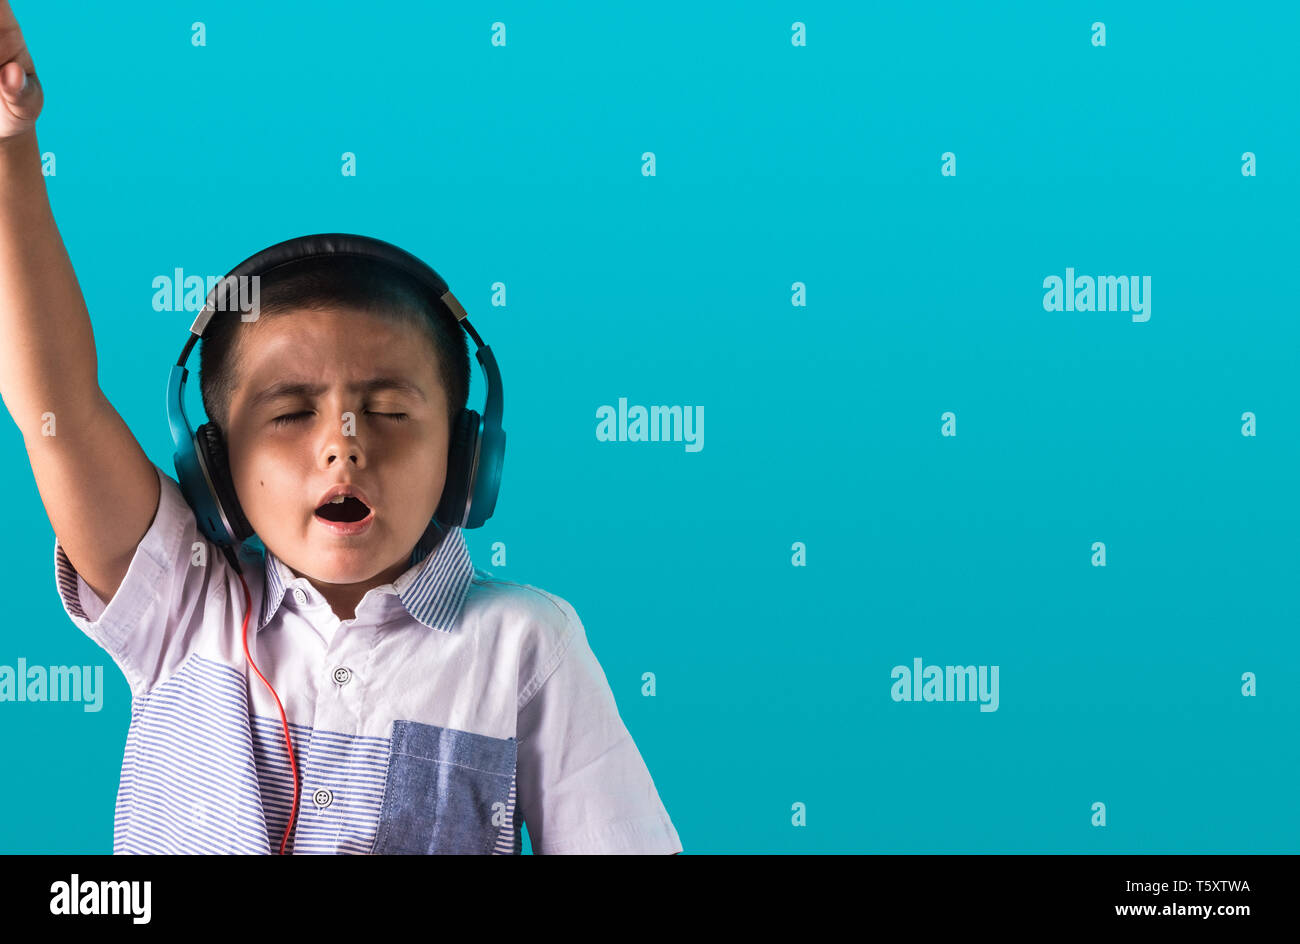 Kleine Jungen mit ausdrucksstarken Gesichts Hören von Musik über Kopfhörer Tanzen und Singen authentischen unposed Bild mit Kopie Platz für Text. Stockfoto